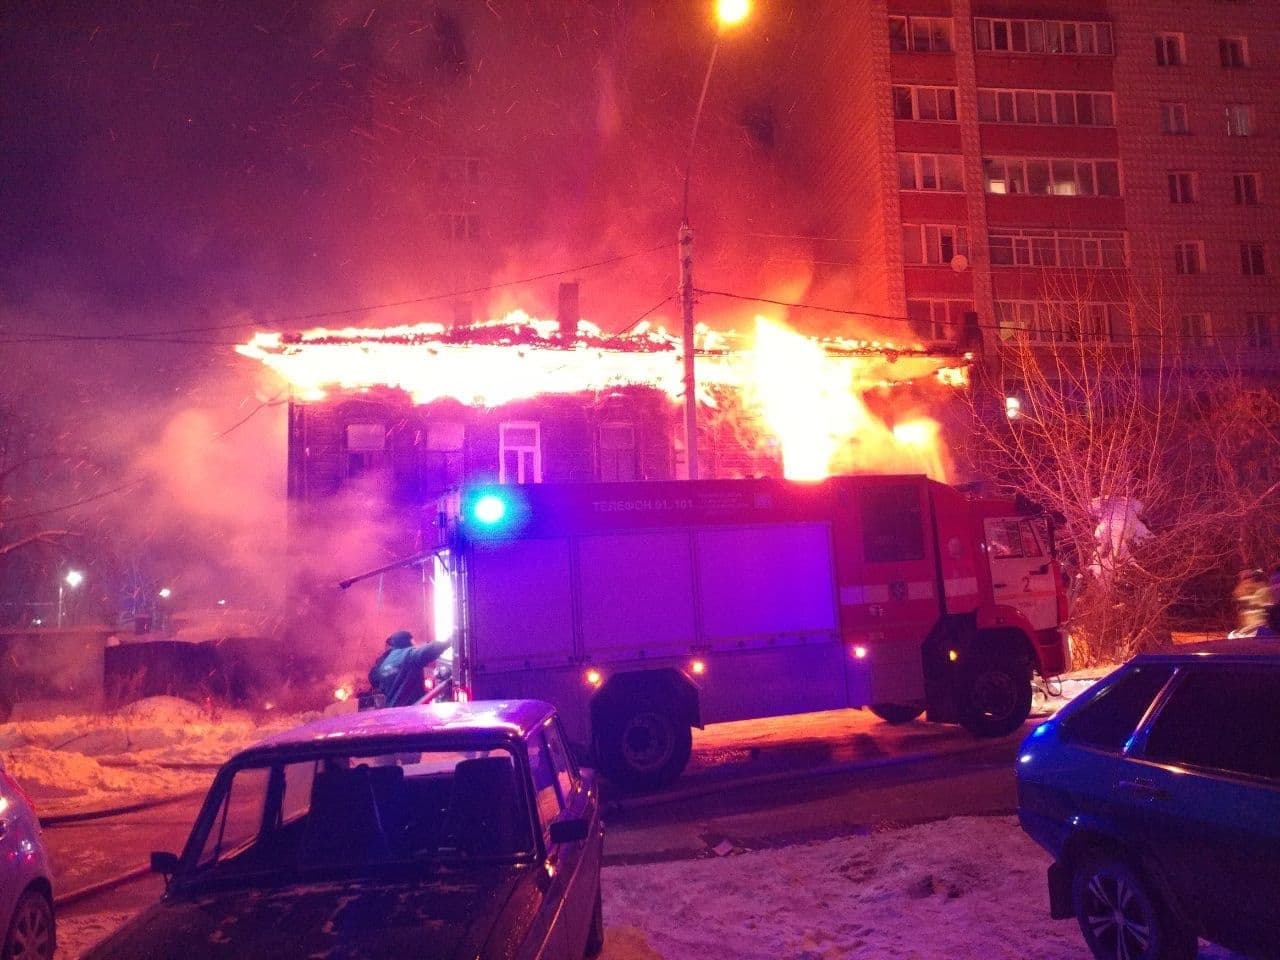 Исторический центр, Происшествия, Томские новости, пожар горит огонь загорелись сгорели Ночью в Томске загорелся исторический дом, пострадал ребенок